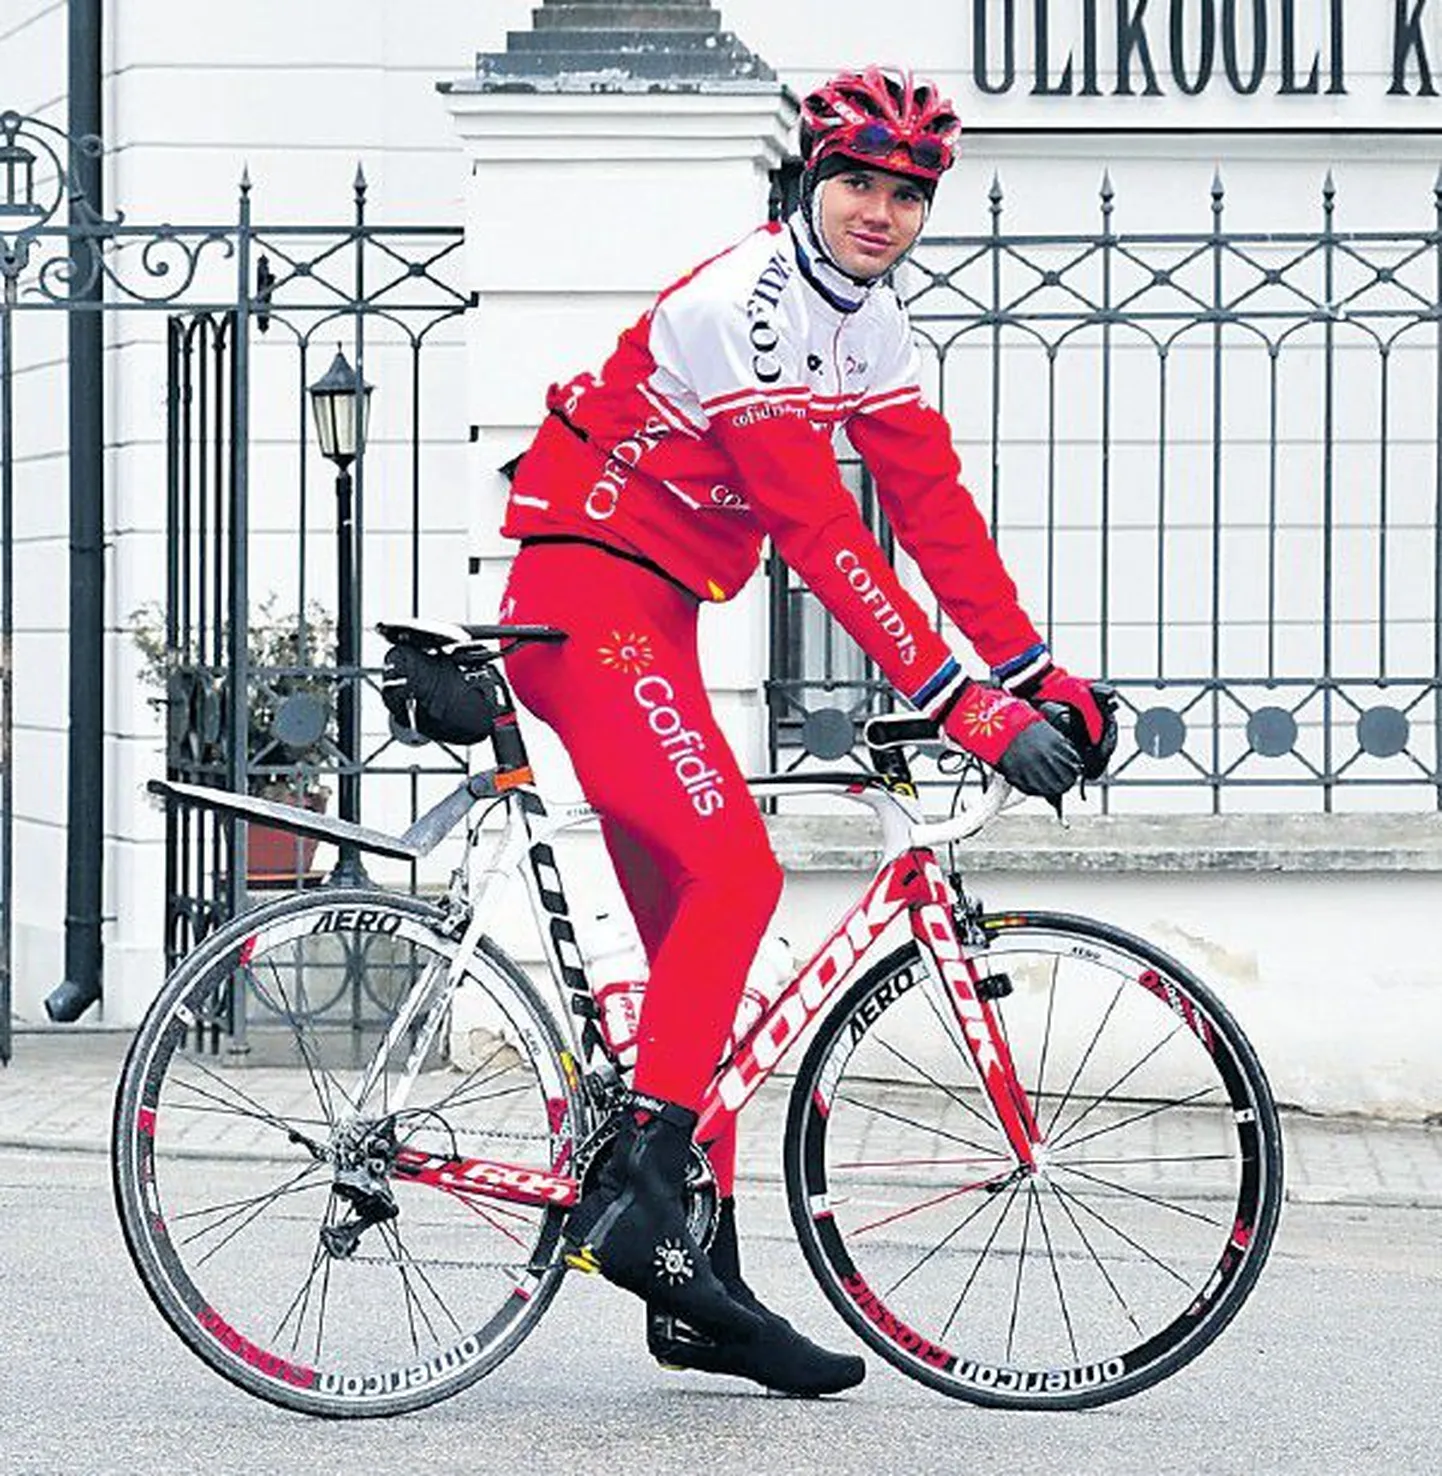 Рейн Таарамяэ с большим уважением относится к высшему образованию, но в Тартуский университет он не планирует поступать и после завершения своей карьеры велогонщика. Его гораздо больше привлекает перс­пектива заниматься делами молодежных клубов.